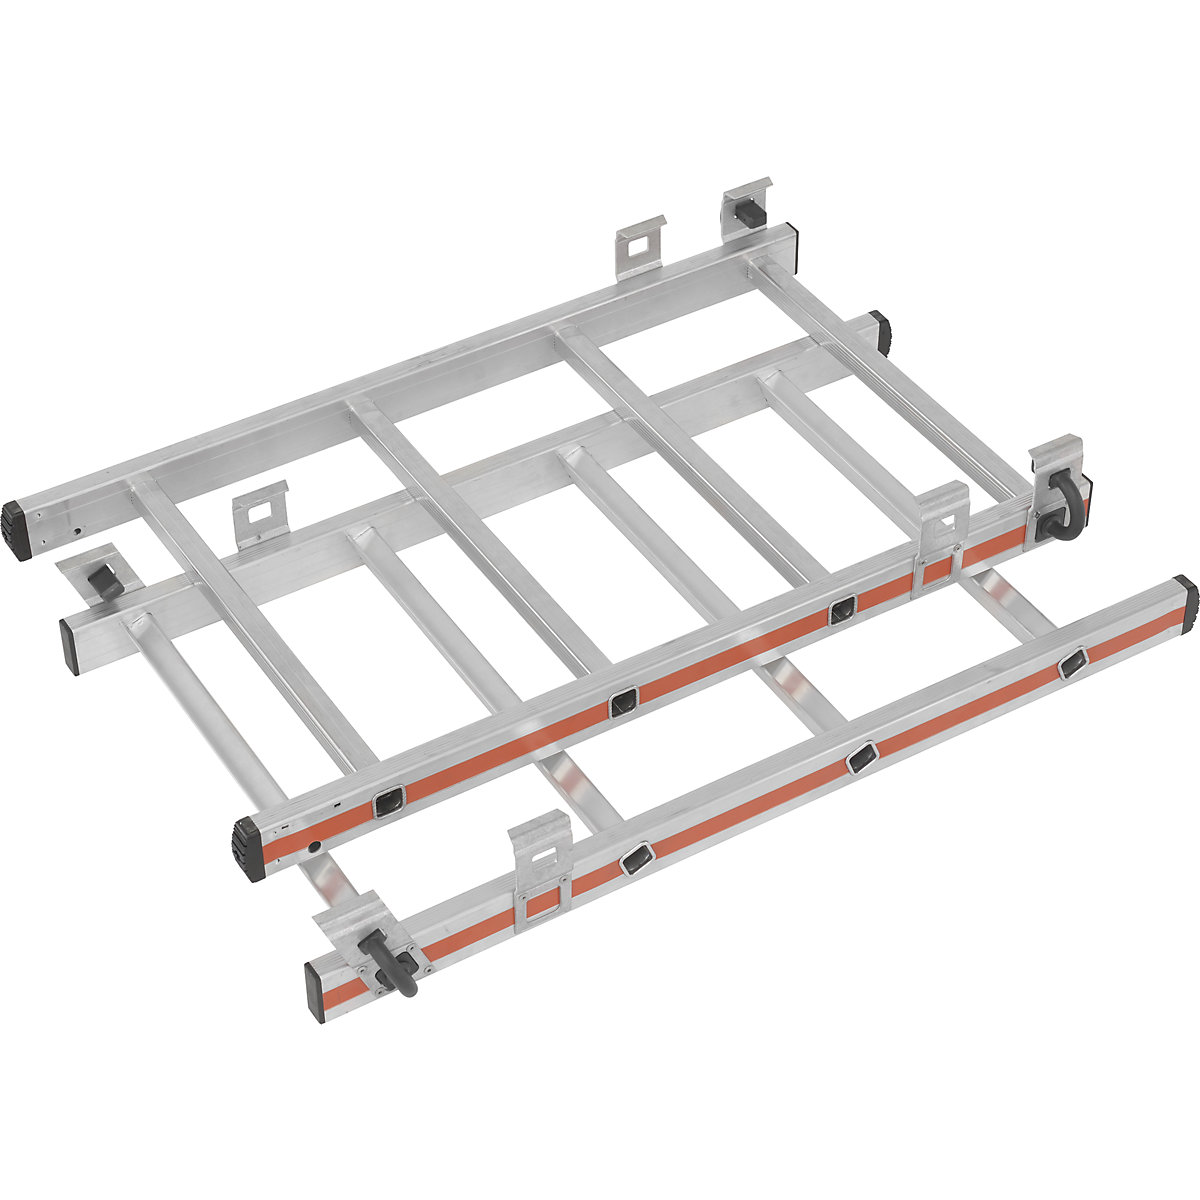 Kit d'extension pour réglage en hauteur – HYMER, pour plate-forme mobile en aluminium, 2 x 4 échelons-3